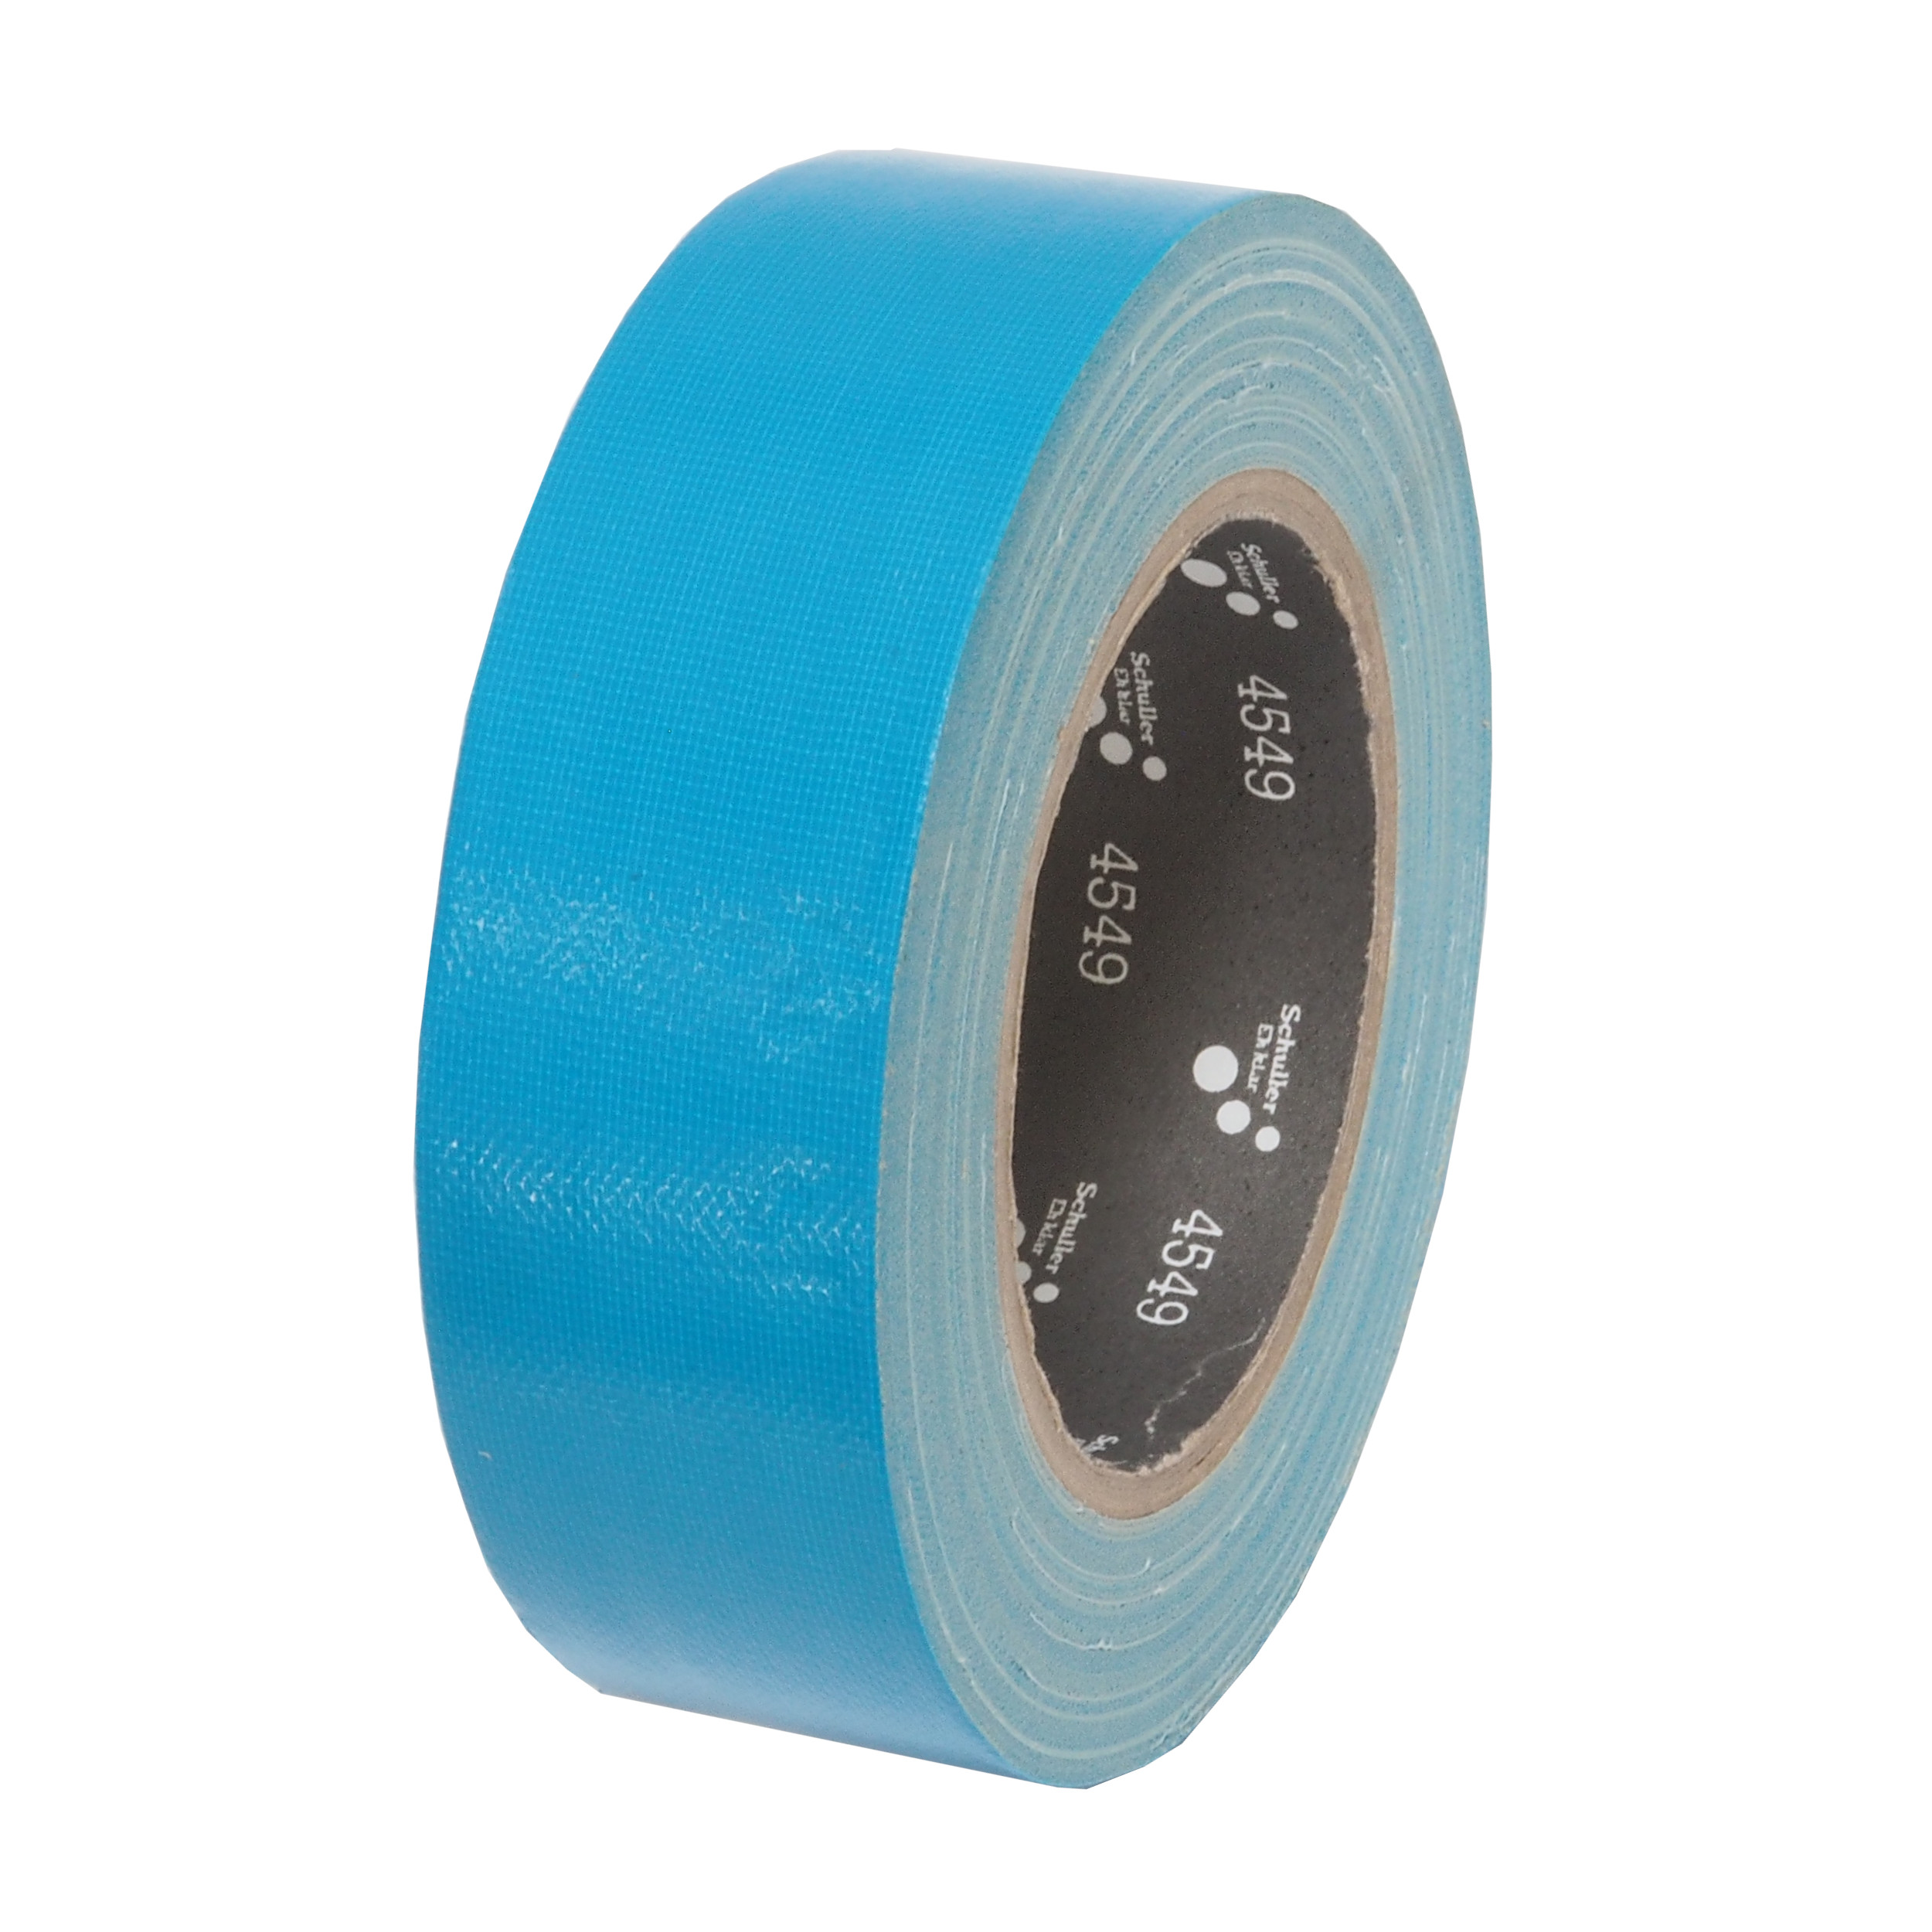 páska lepící, tkaninová, UV odolná, modrá, 38 mm x 25 m 0.34 Kg TOP Sklad4 701409 12